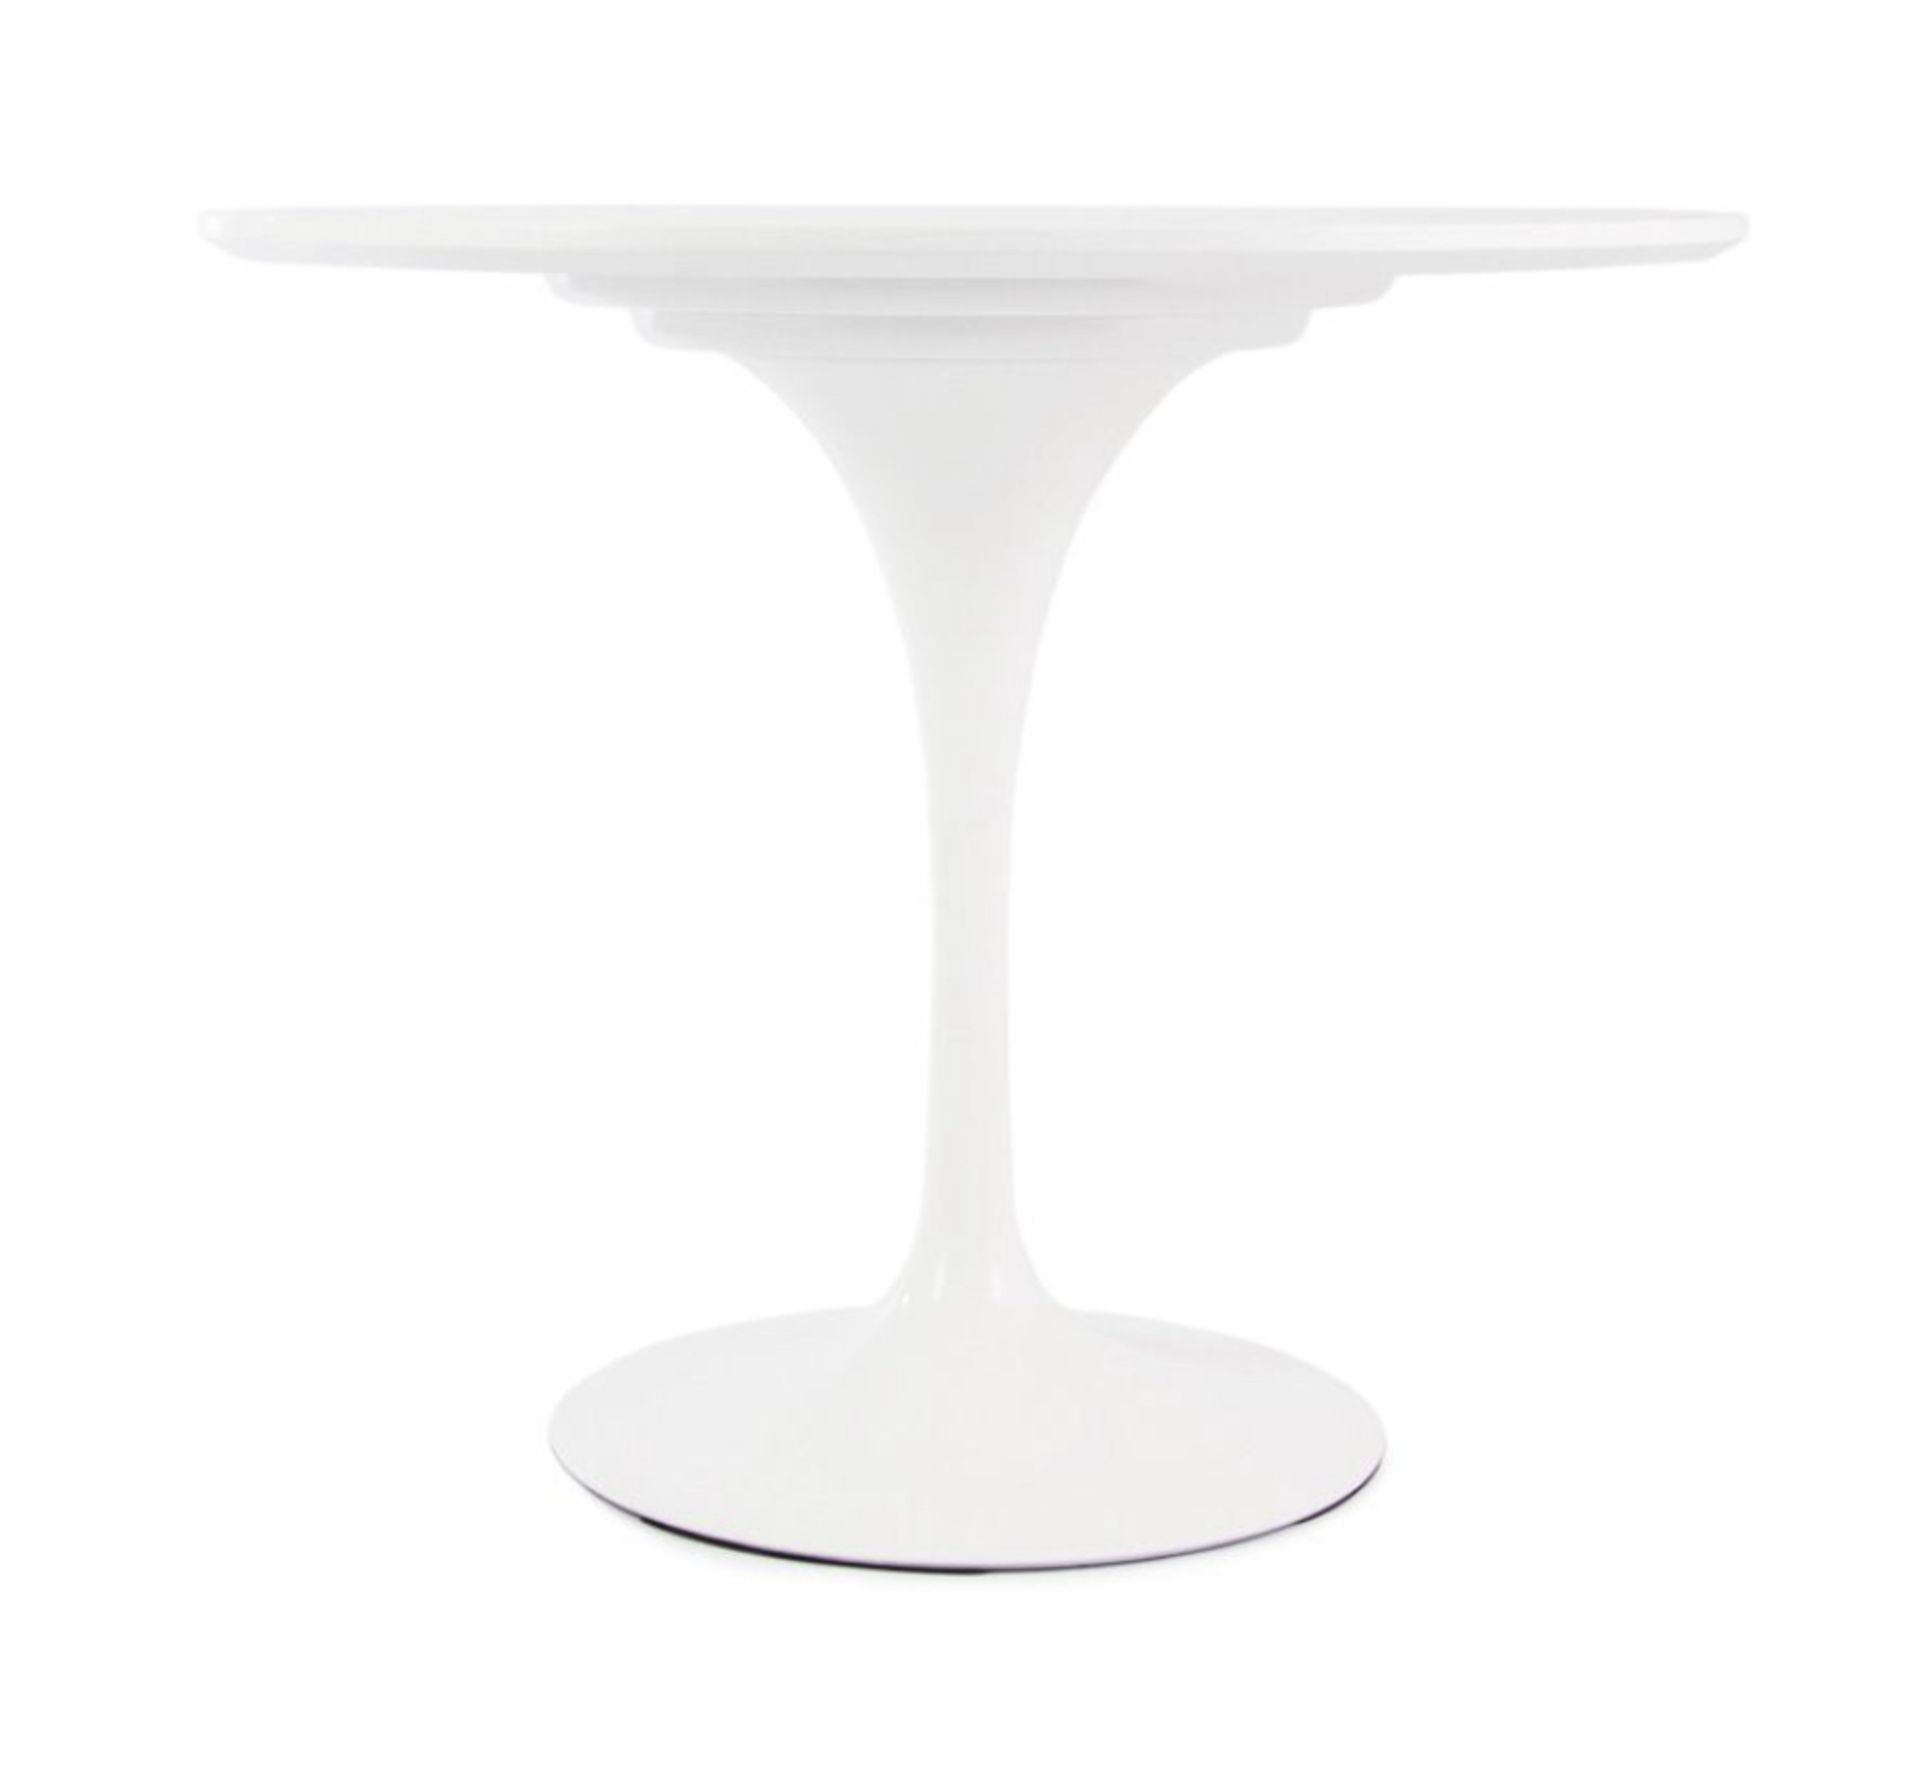 Tulip Eero Saarinen Inspired Table, 90cm - NEW - Image 7 of 9